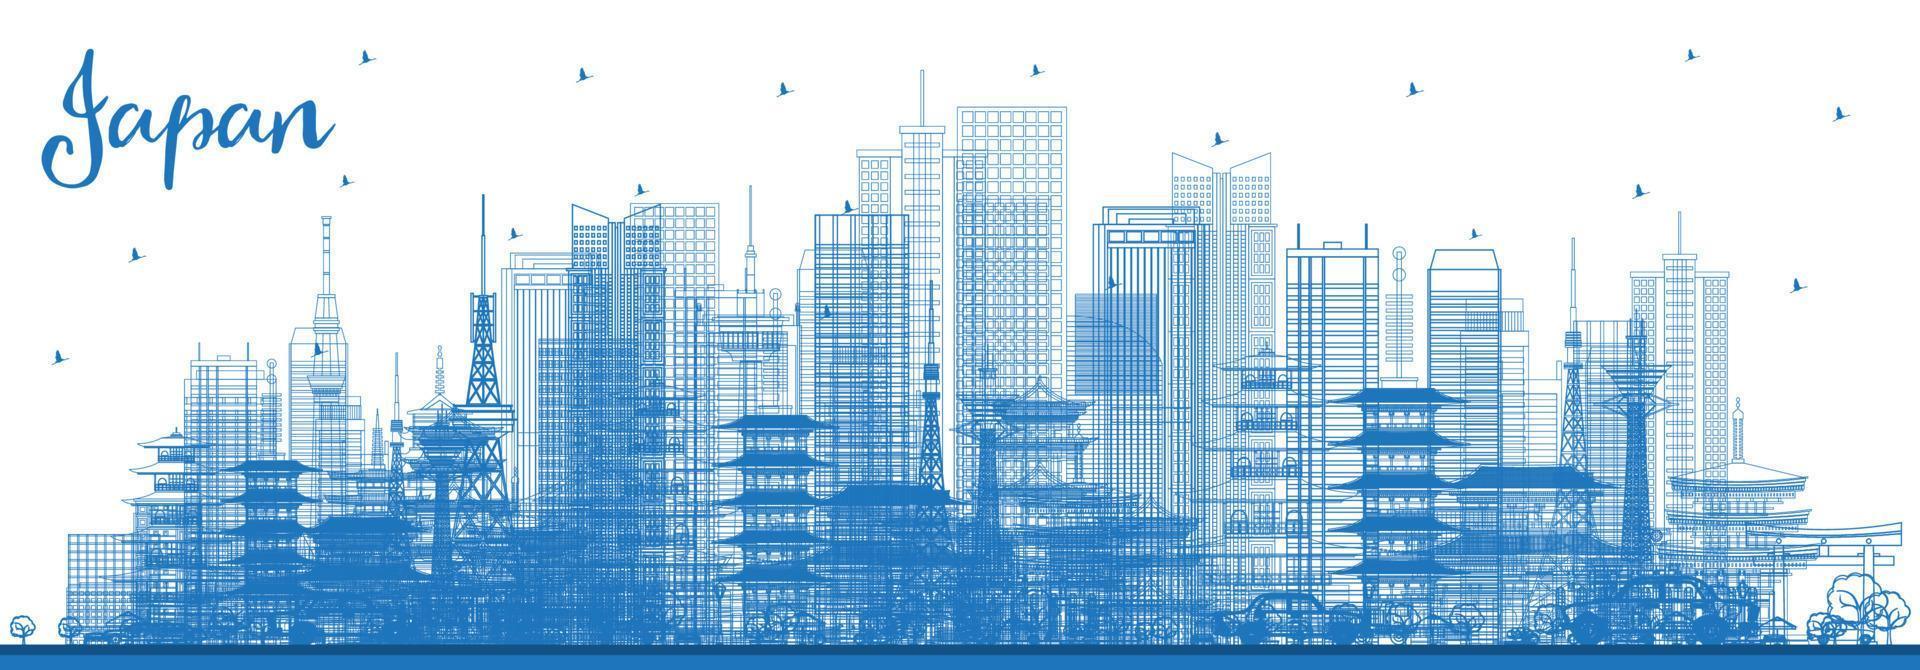 delinear o horizonte do japão com edifícios azuis. vetor